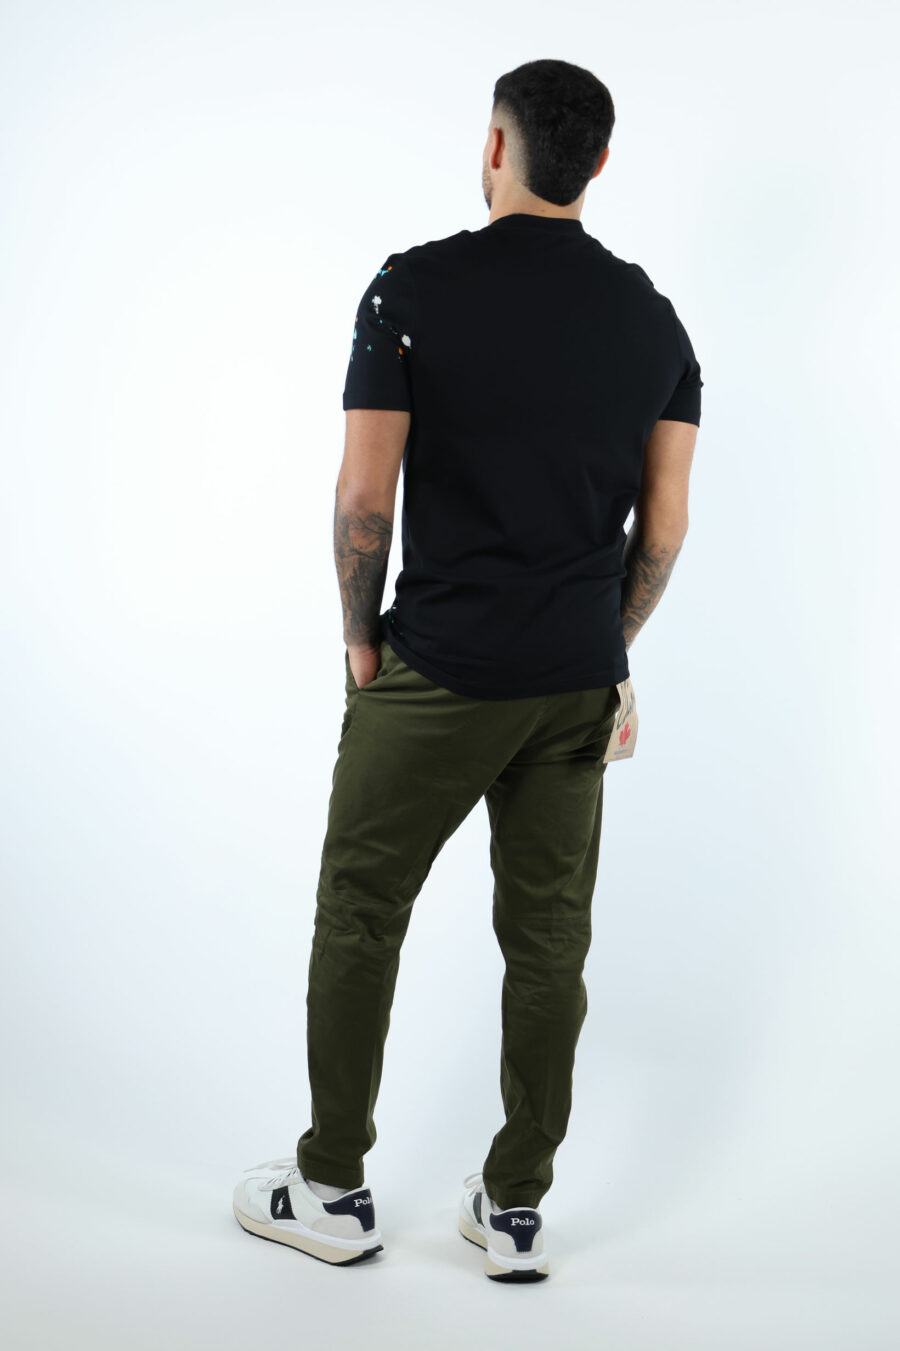 Schwarzes T-Shirt mit Maxilogo "couture milano" mit mehrfarbigem "splash" - 107055